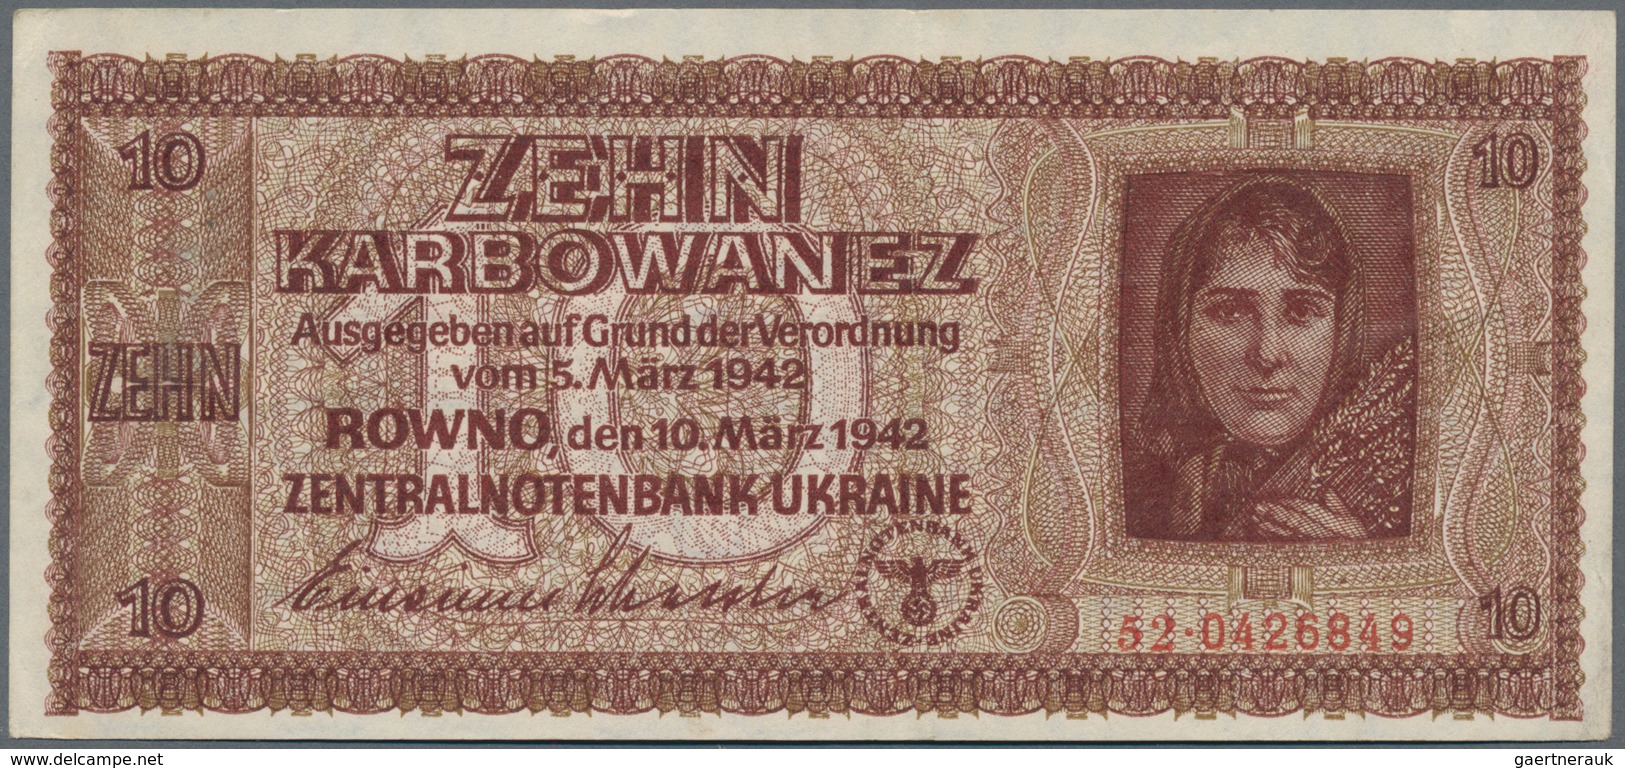 Deutschland - Nebengebiete Deutsches Reich: Zentralnotenbank Ukraine Lot mit 8 Banknoten 1 (UNC), 5